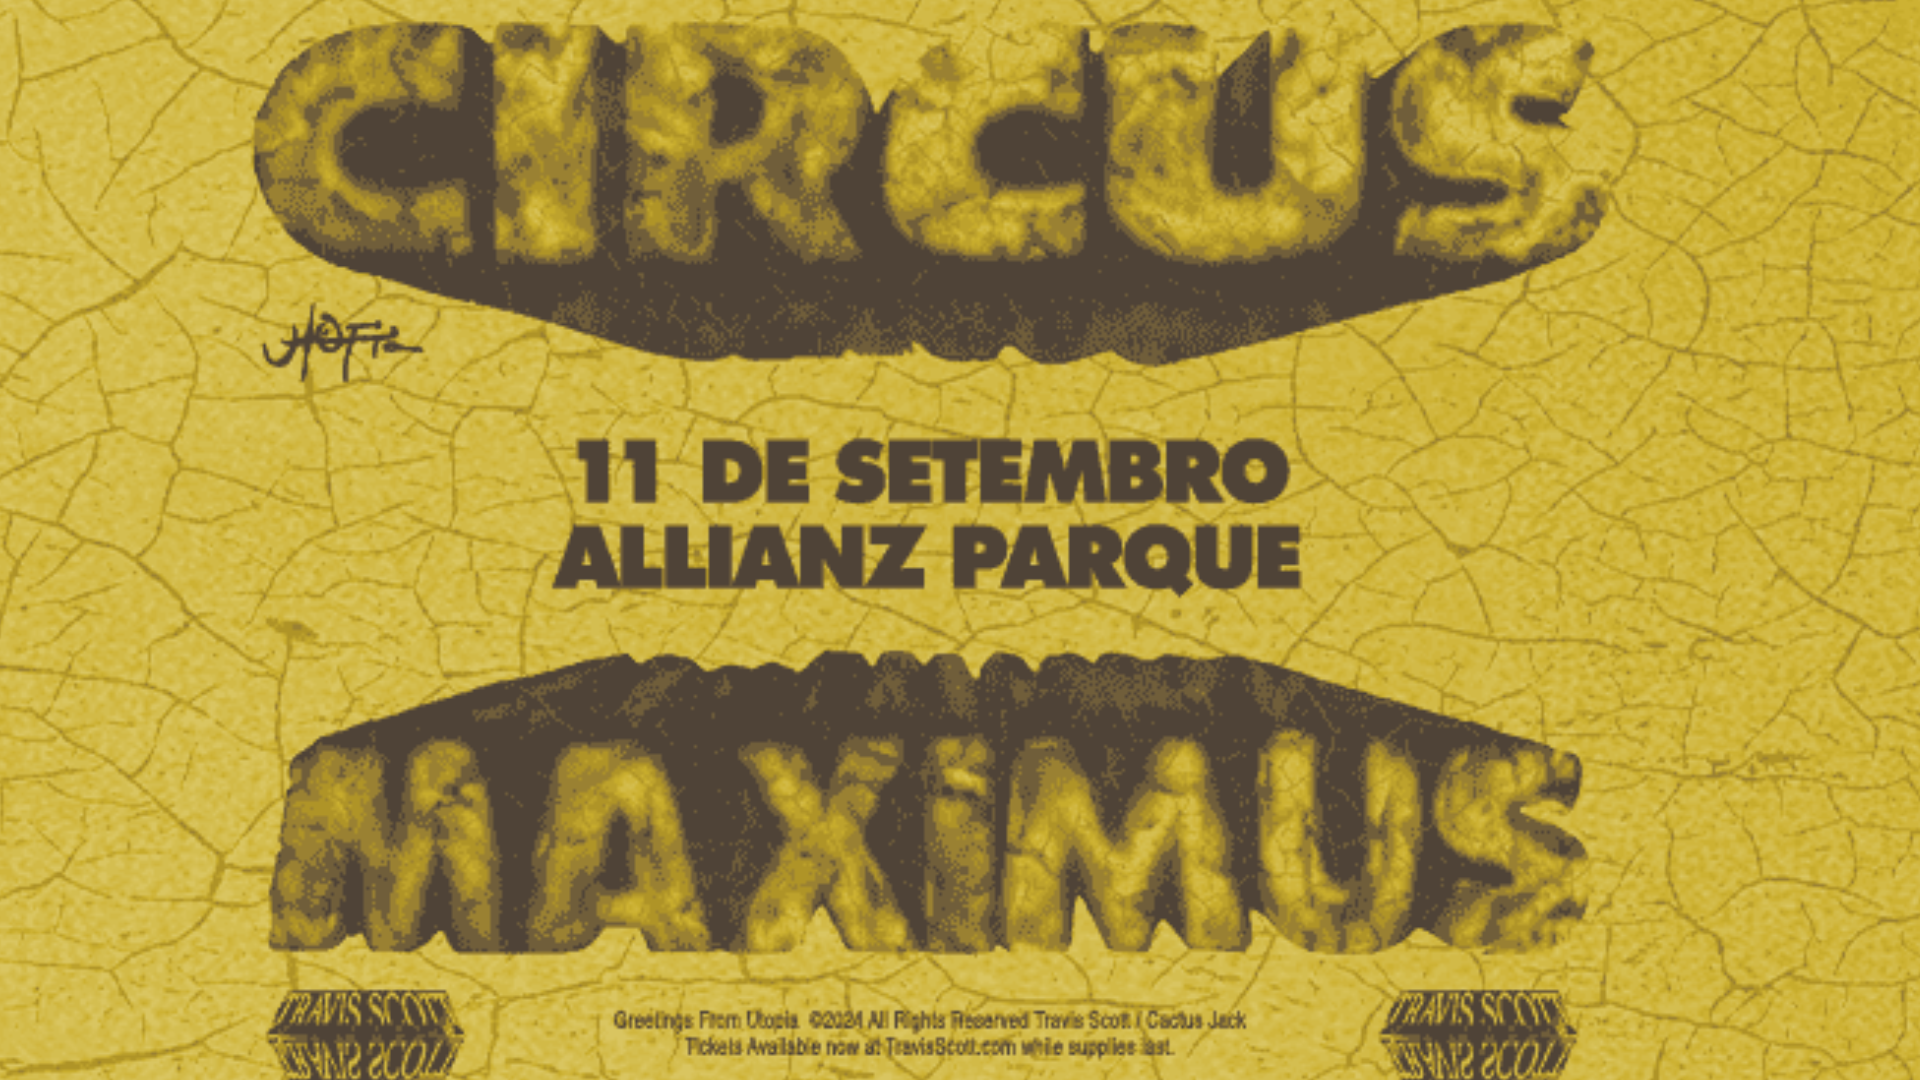 Além do Rock in Rio: Travis Scott vai incendiar São Paulo com Circus Maximus